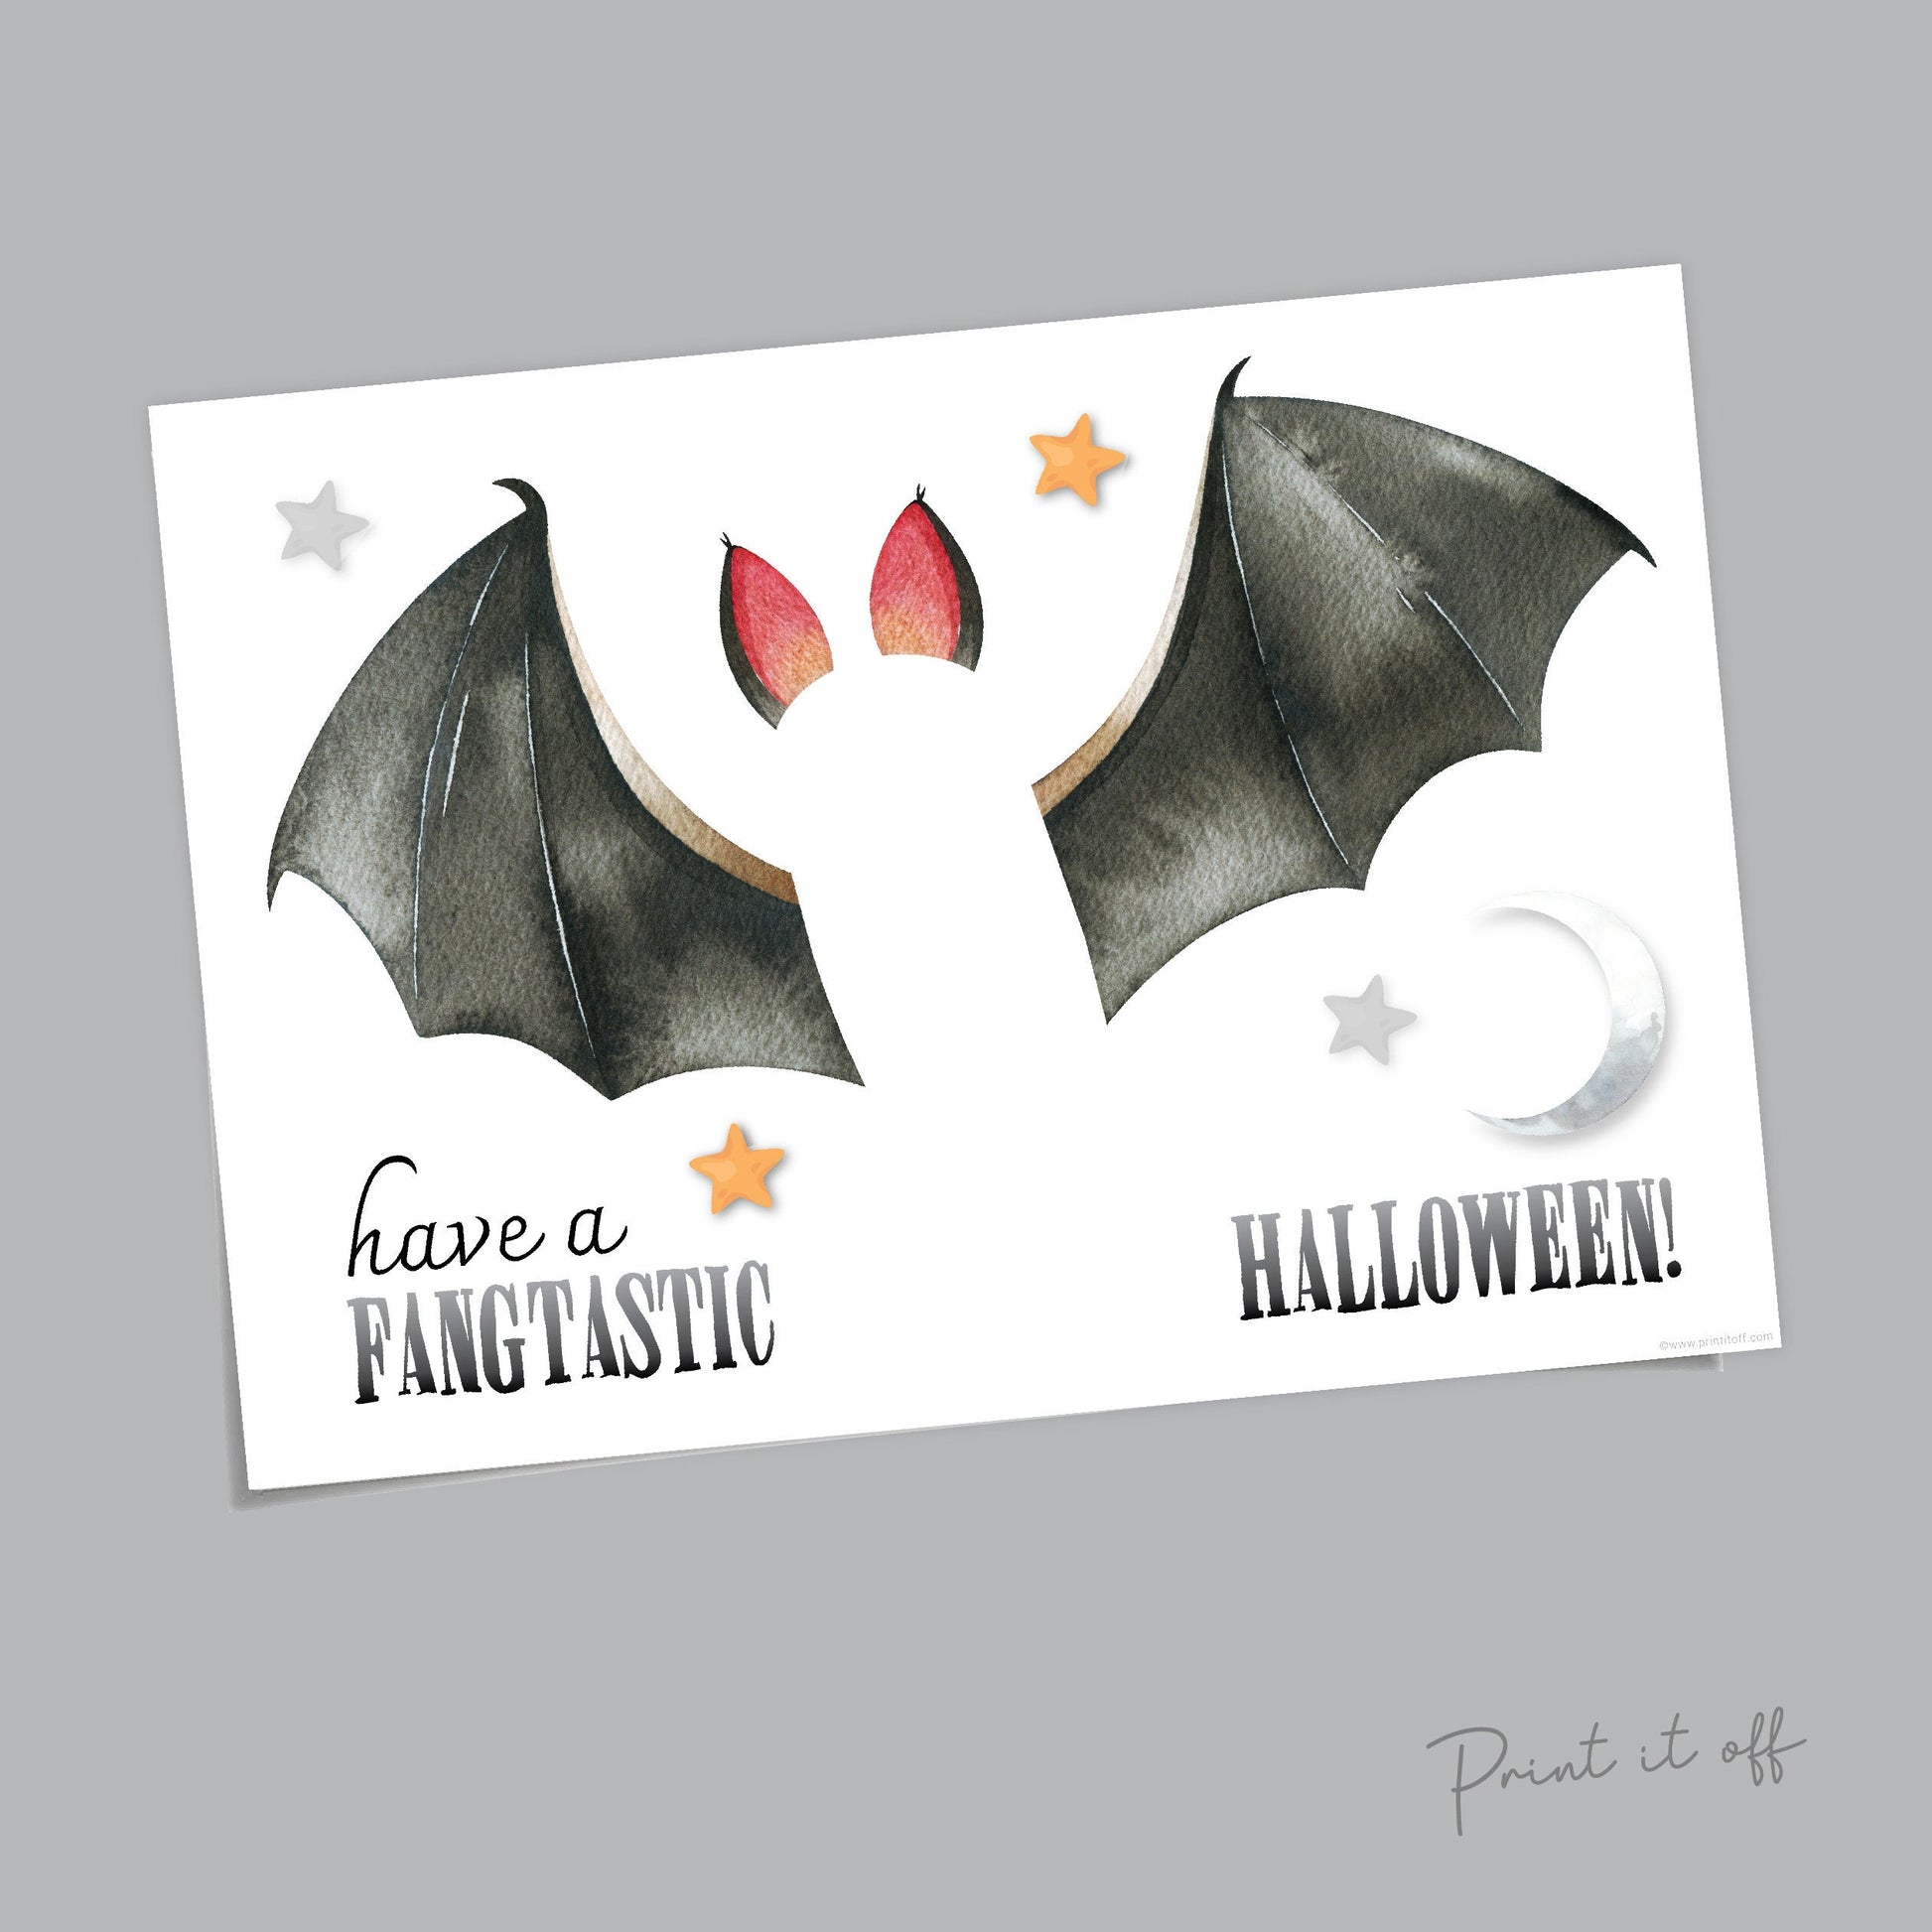 Bat Halloween Art Craft / Footprint Handprint Art / Fang-Tastic / Kids Baby Toddler / Keepsake Memory Sign Decor Card / Print It Off 0598